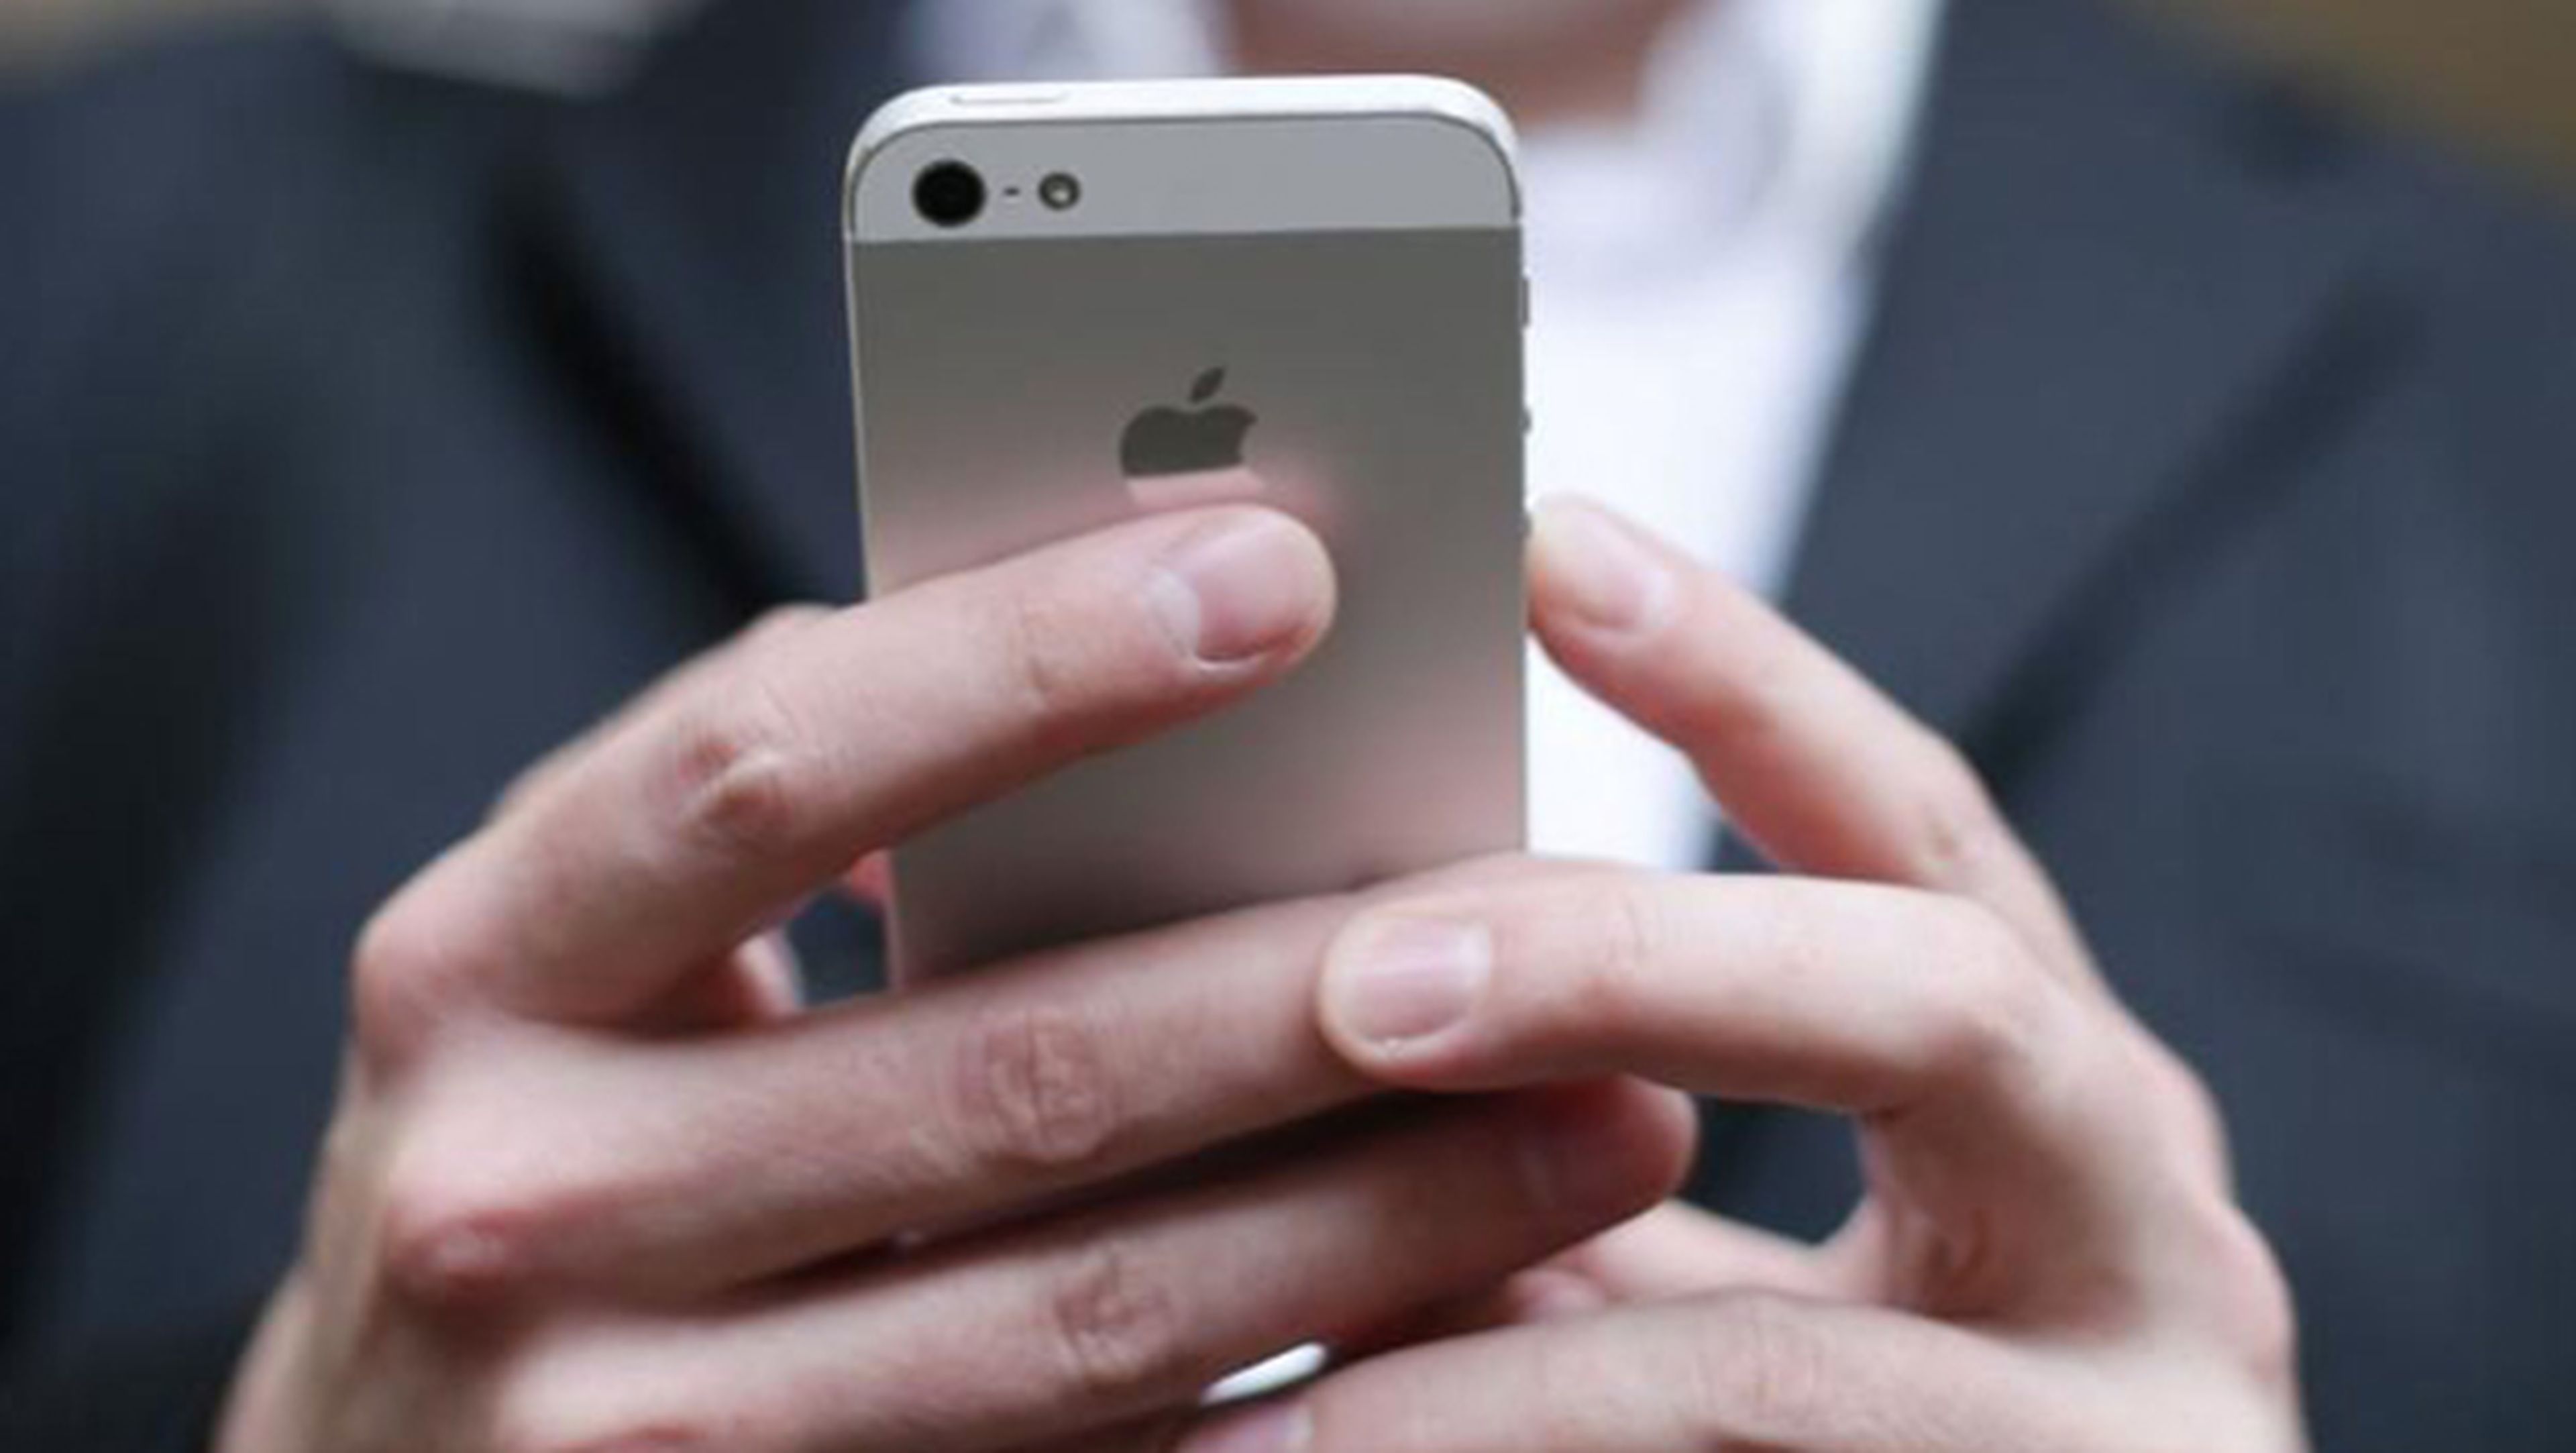 Los hackers pueden brickear un iPhone a través del WiFi